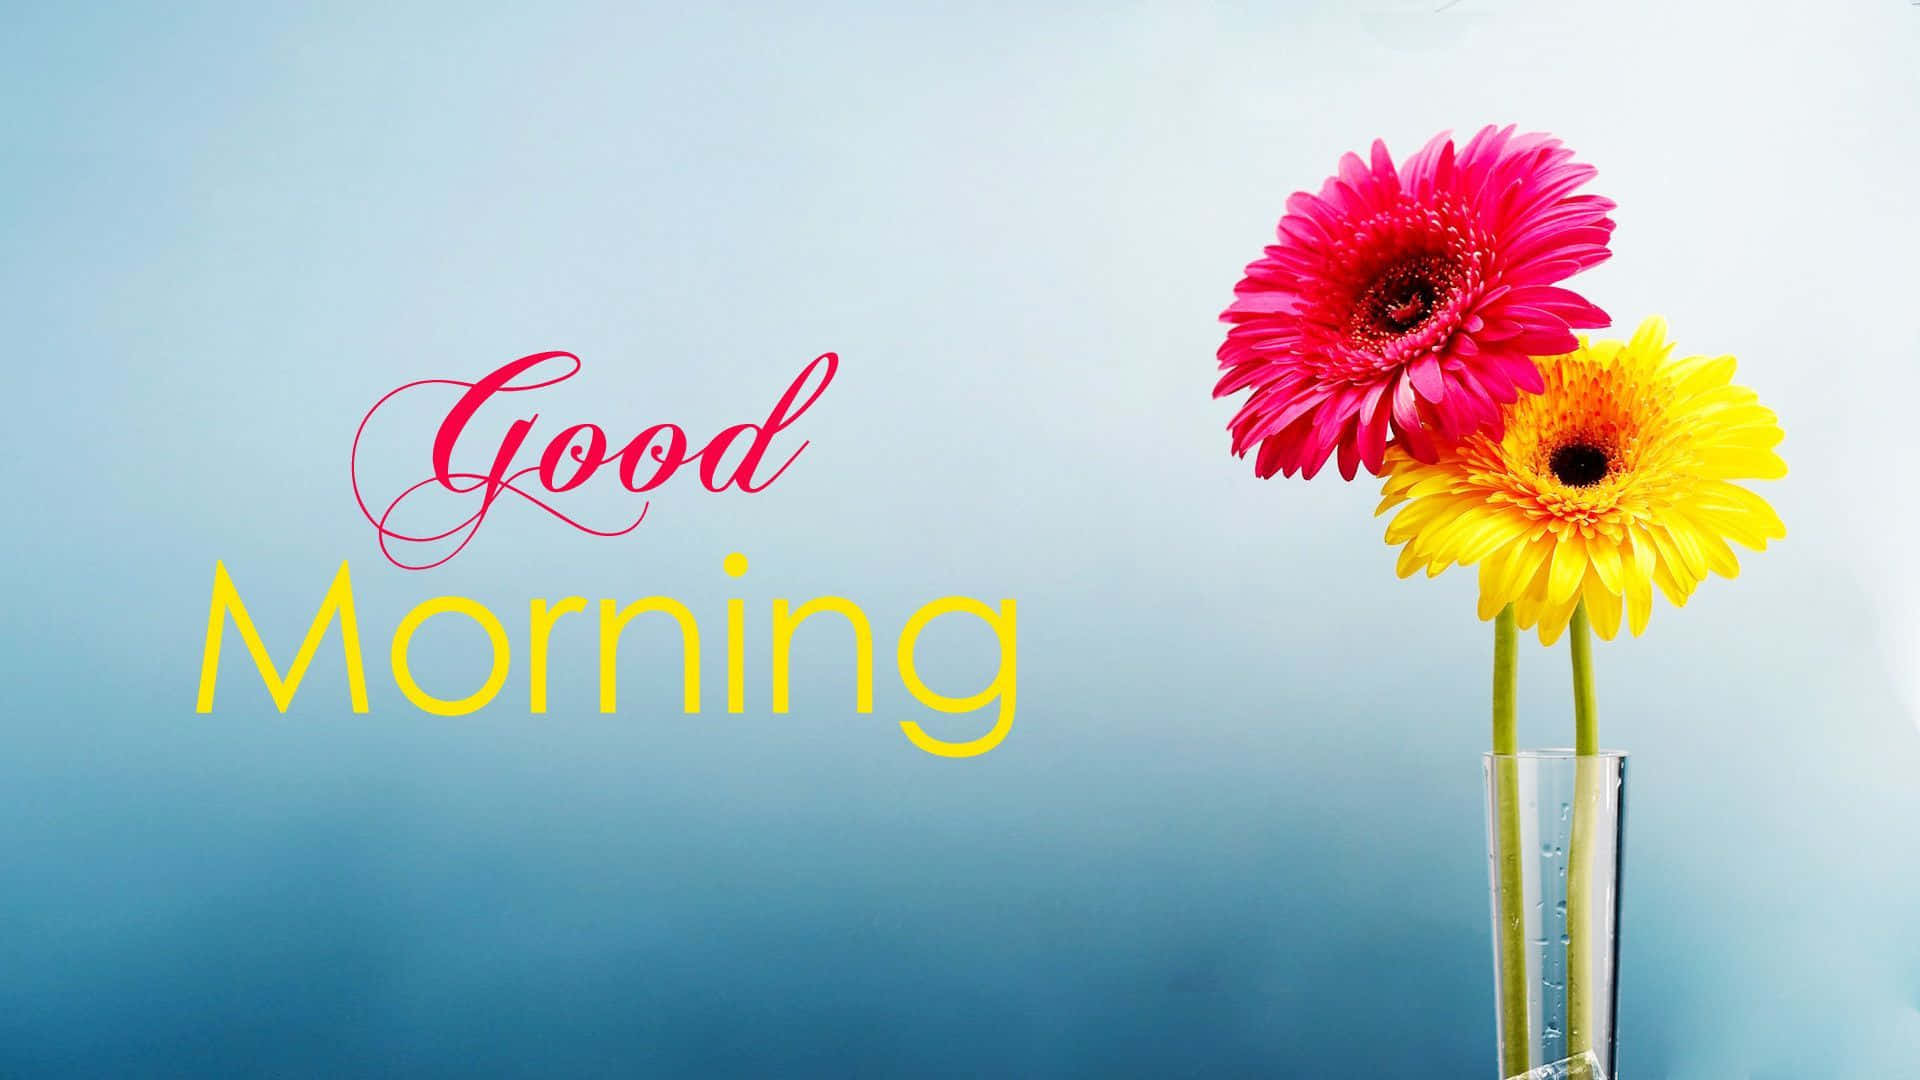 Включи good morning. Good morning картинки. Good morning цветы. Good morning картинки красивые. Best Wishes фон.